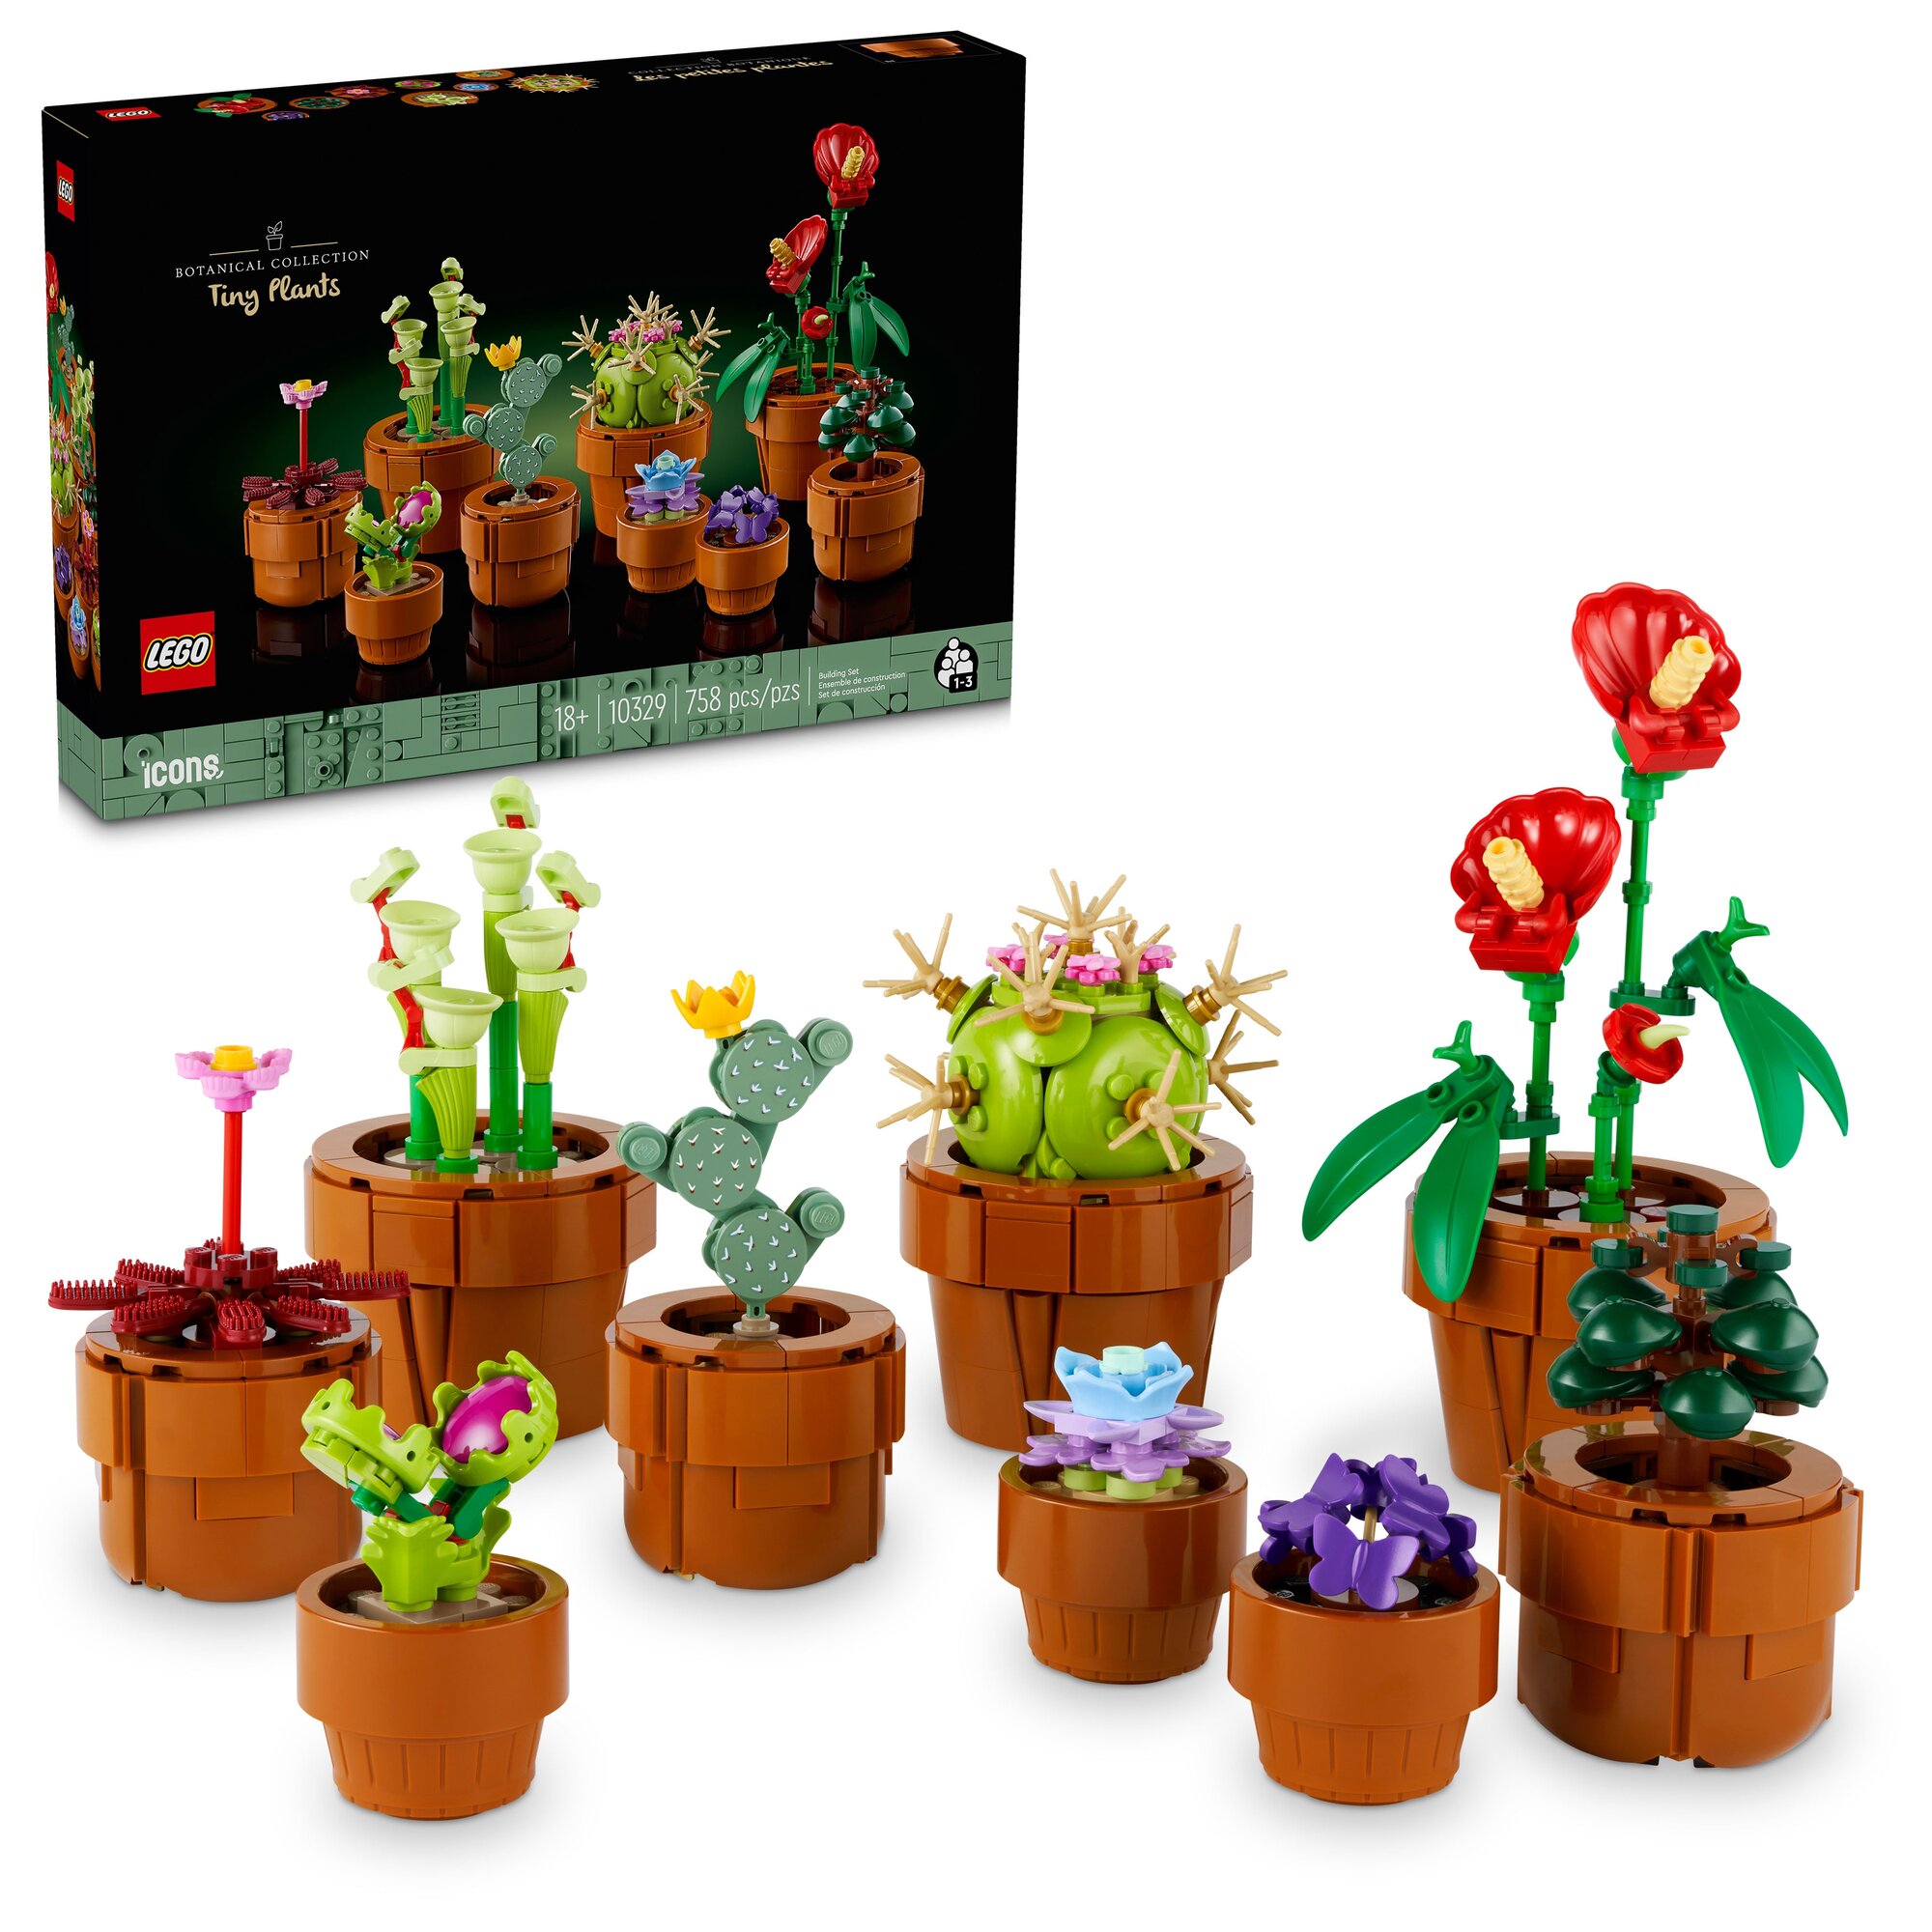 Конструктор LEGO Маленькие растения 10329, 758 дет.